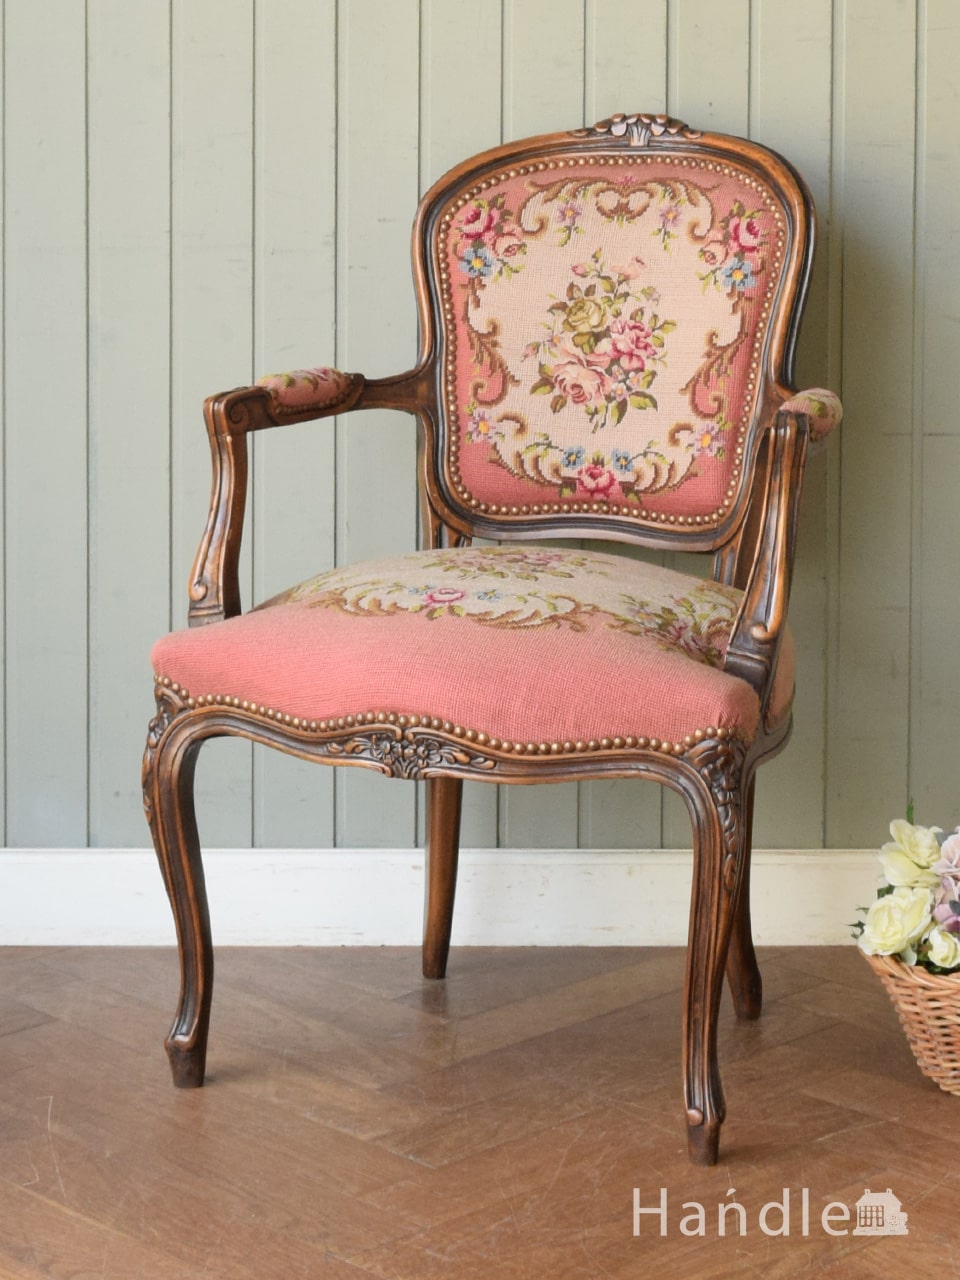 フランス生まれのアンティーク椅子、お花の刺繍が可愛いプチポワンのアームチェア (j-720-c)